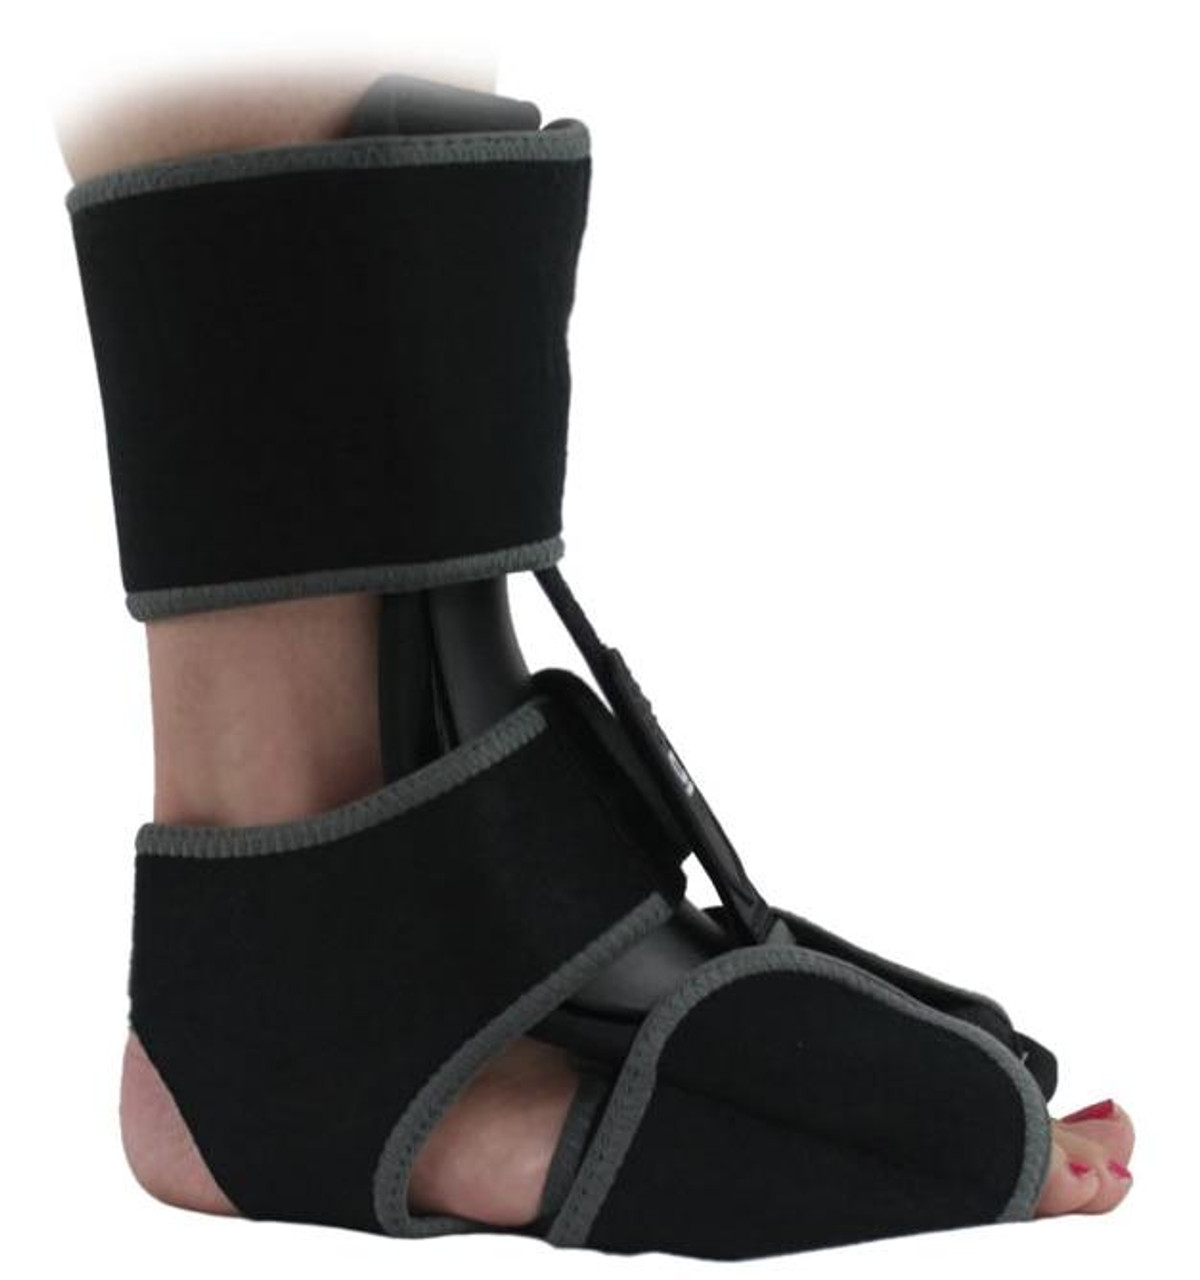 Brace Compression Sock Plantar Fasciitis Night Splint Boot Splint